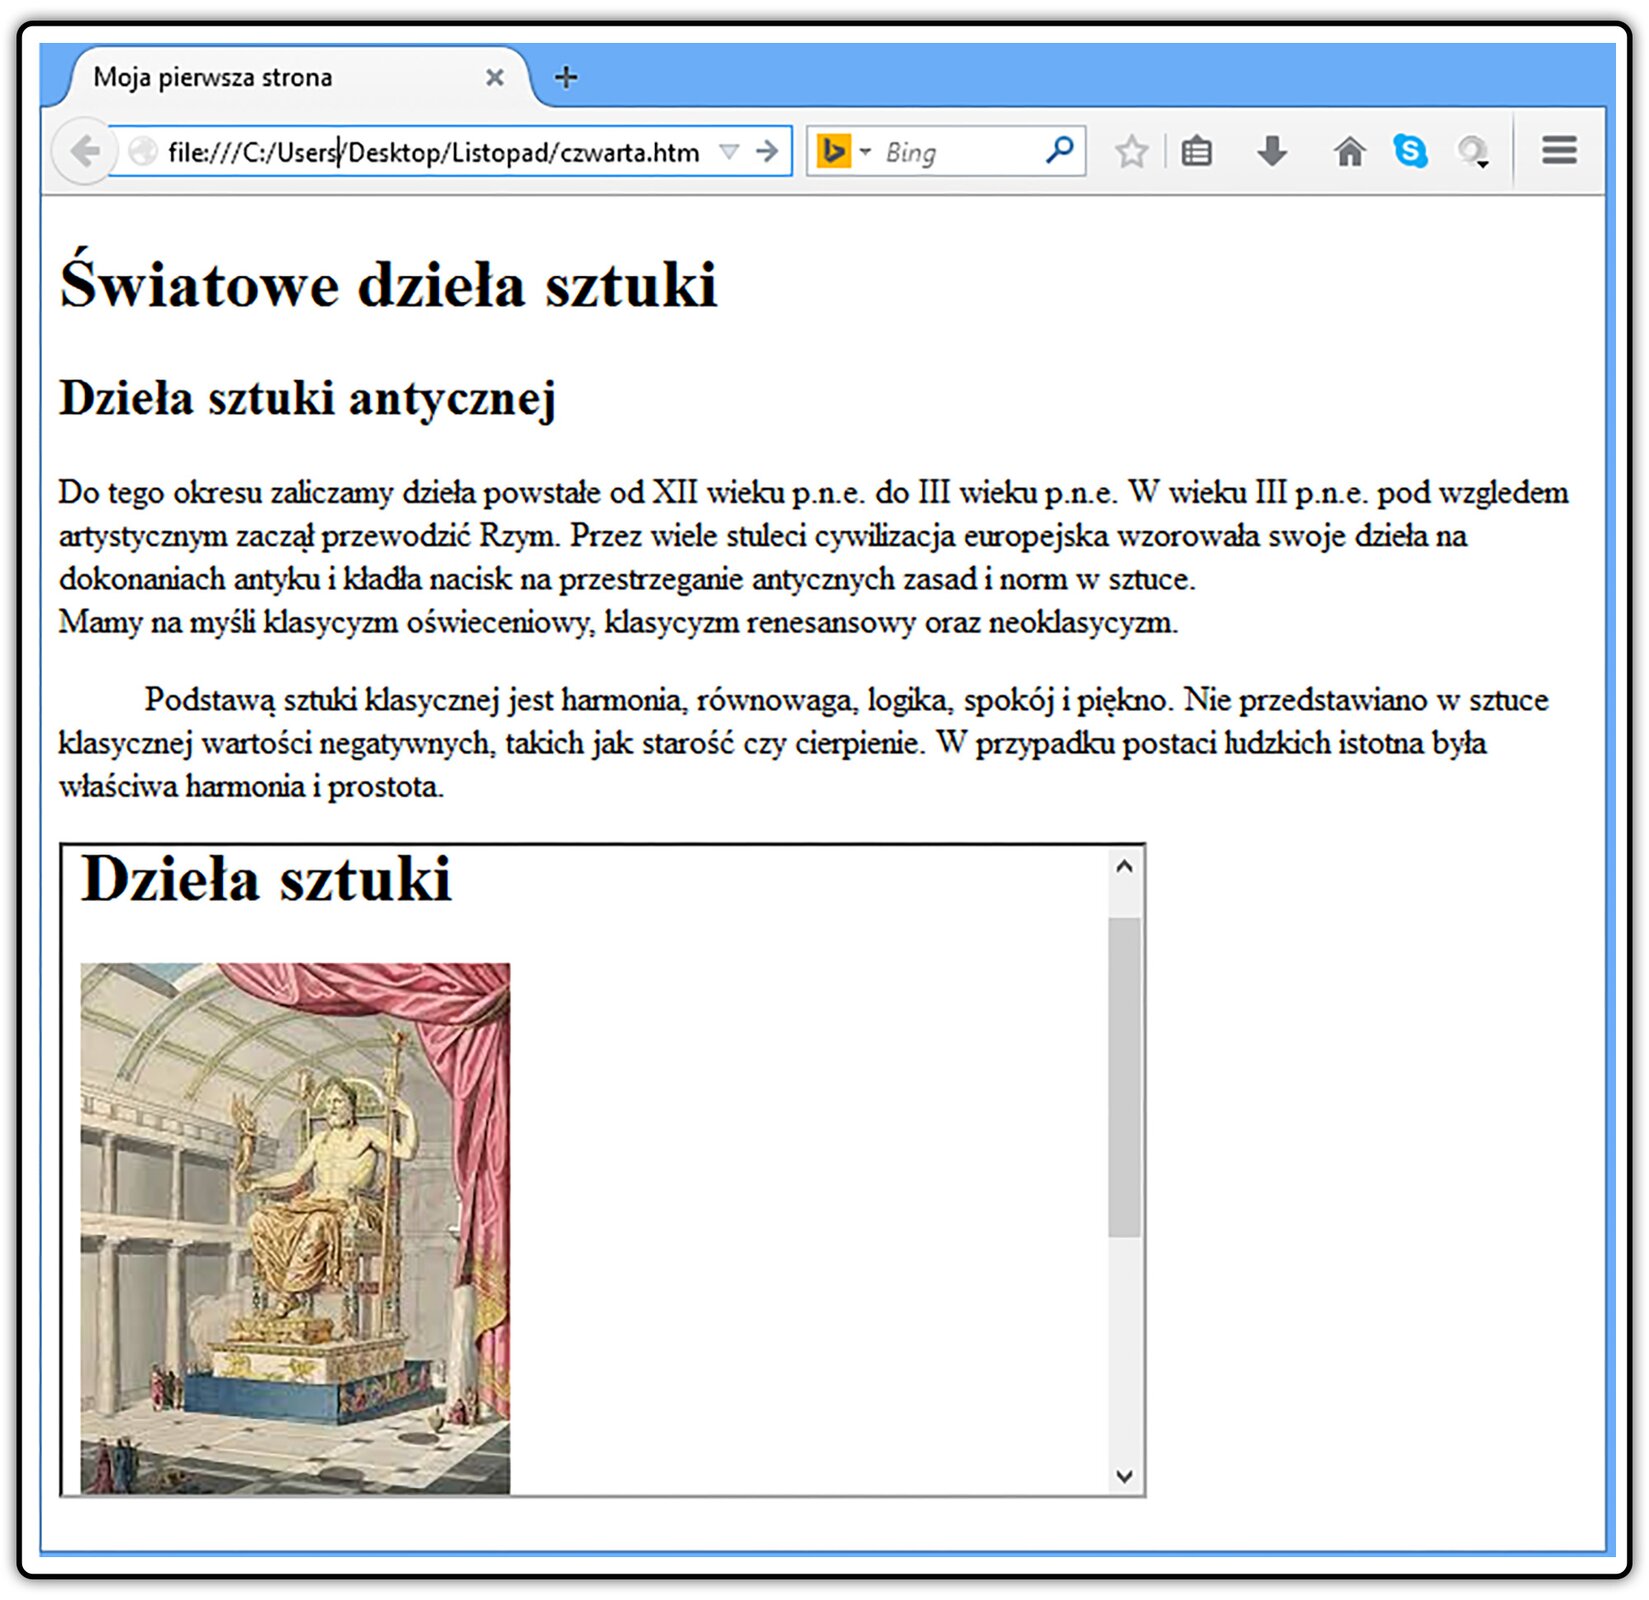 Zrzut widoku strony dokumentu HTML z ramka pływającą zawierającą inną stronę